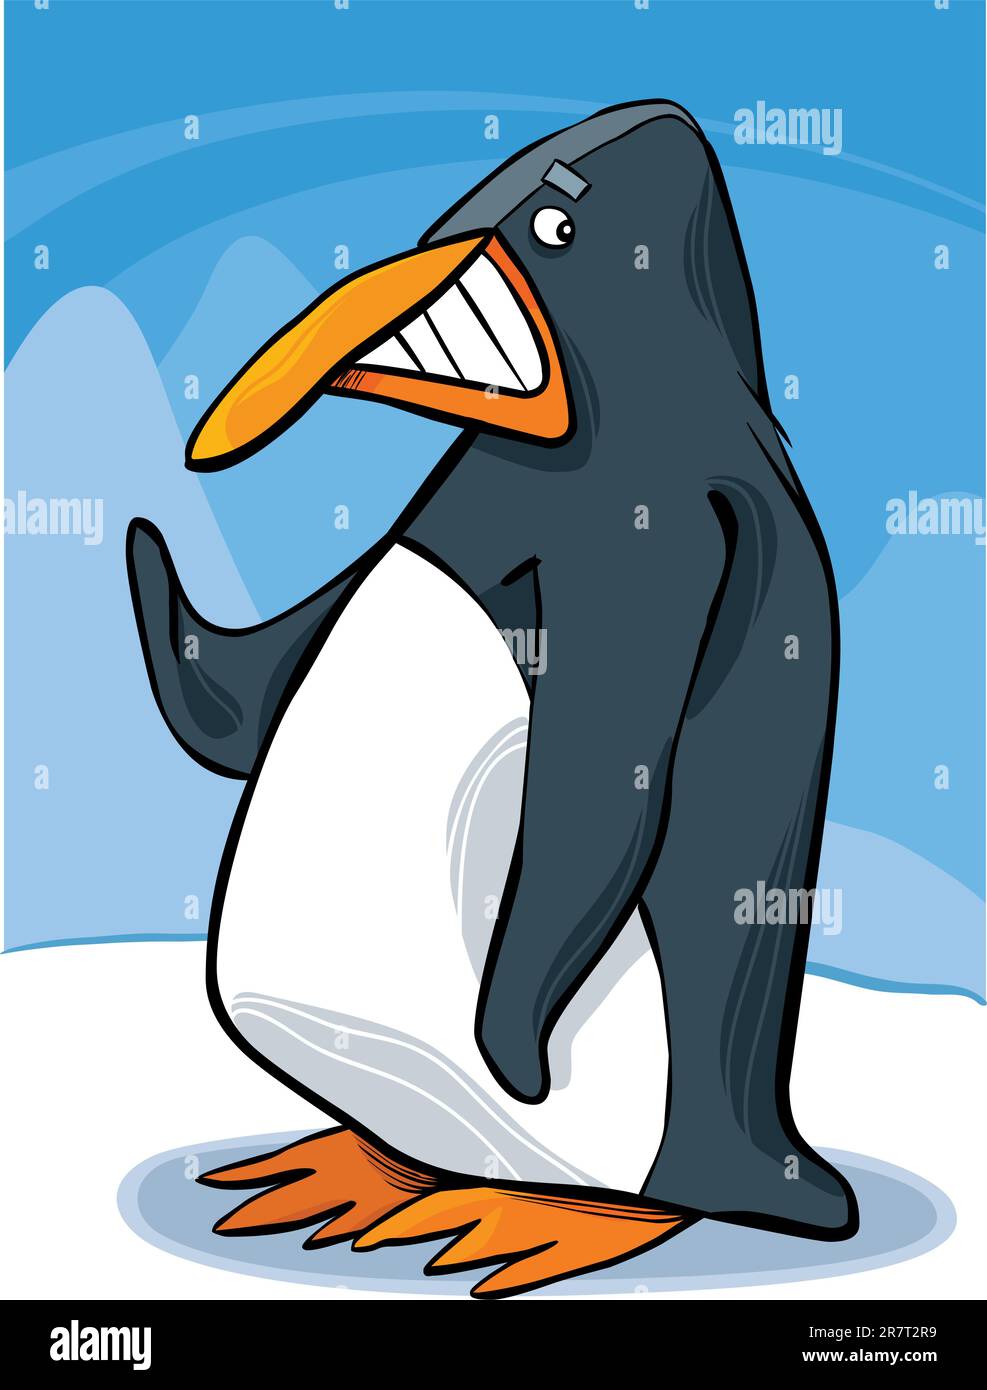 cartoon illustration of funny emperor penguin Stock Vector